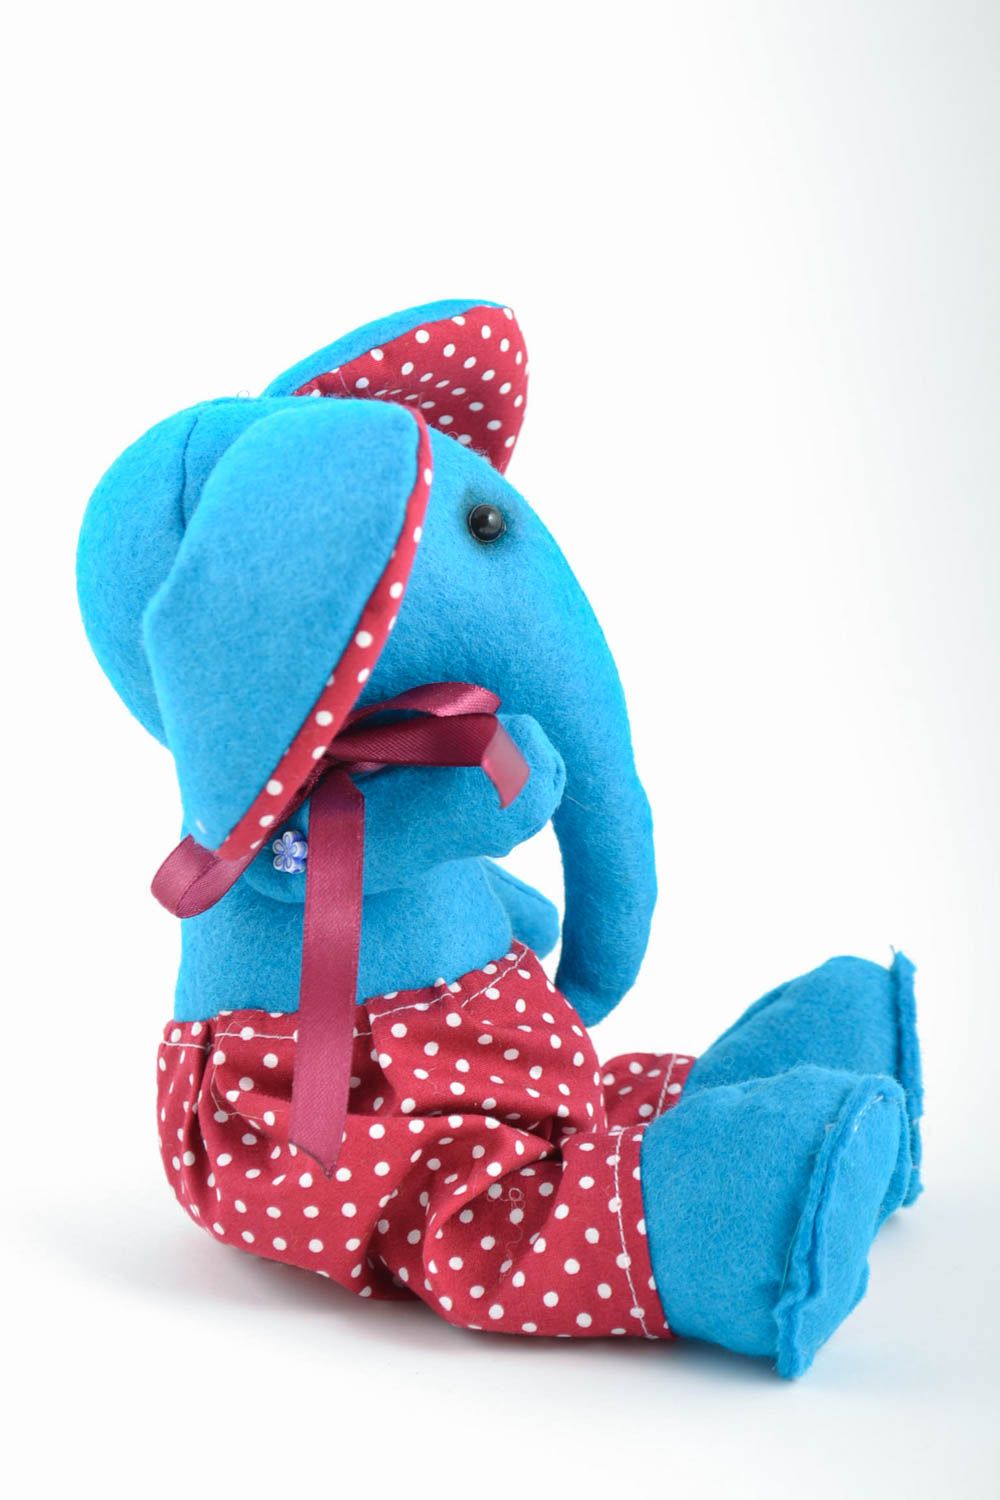 Голубая игрушка слоник из фетра ручной работы мягкая оригинальная красивая фото 3